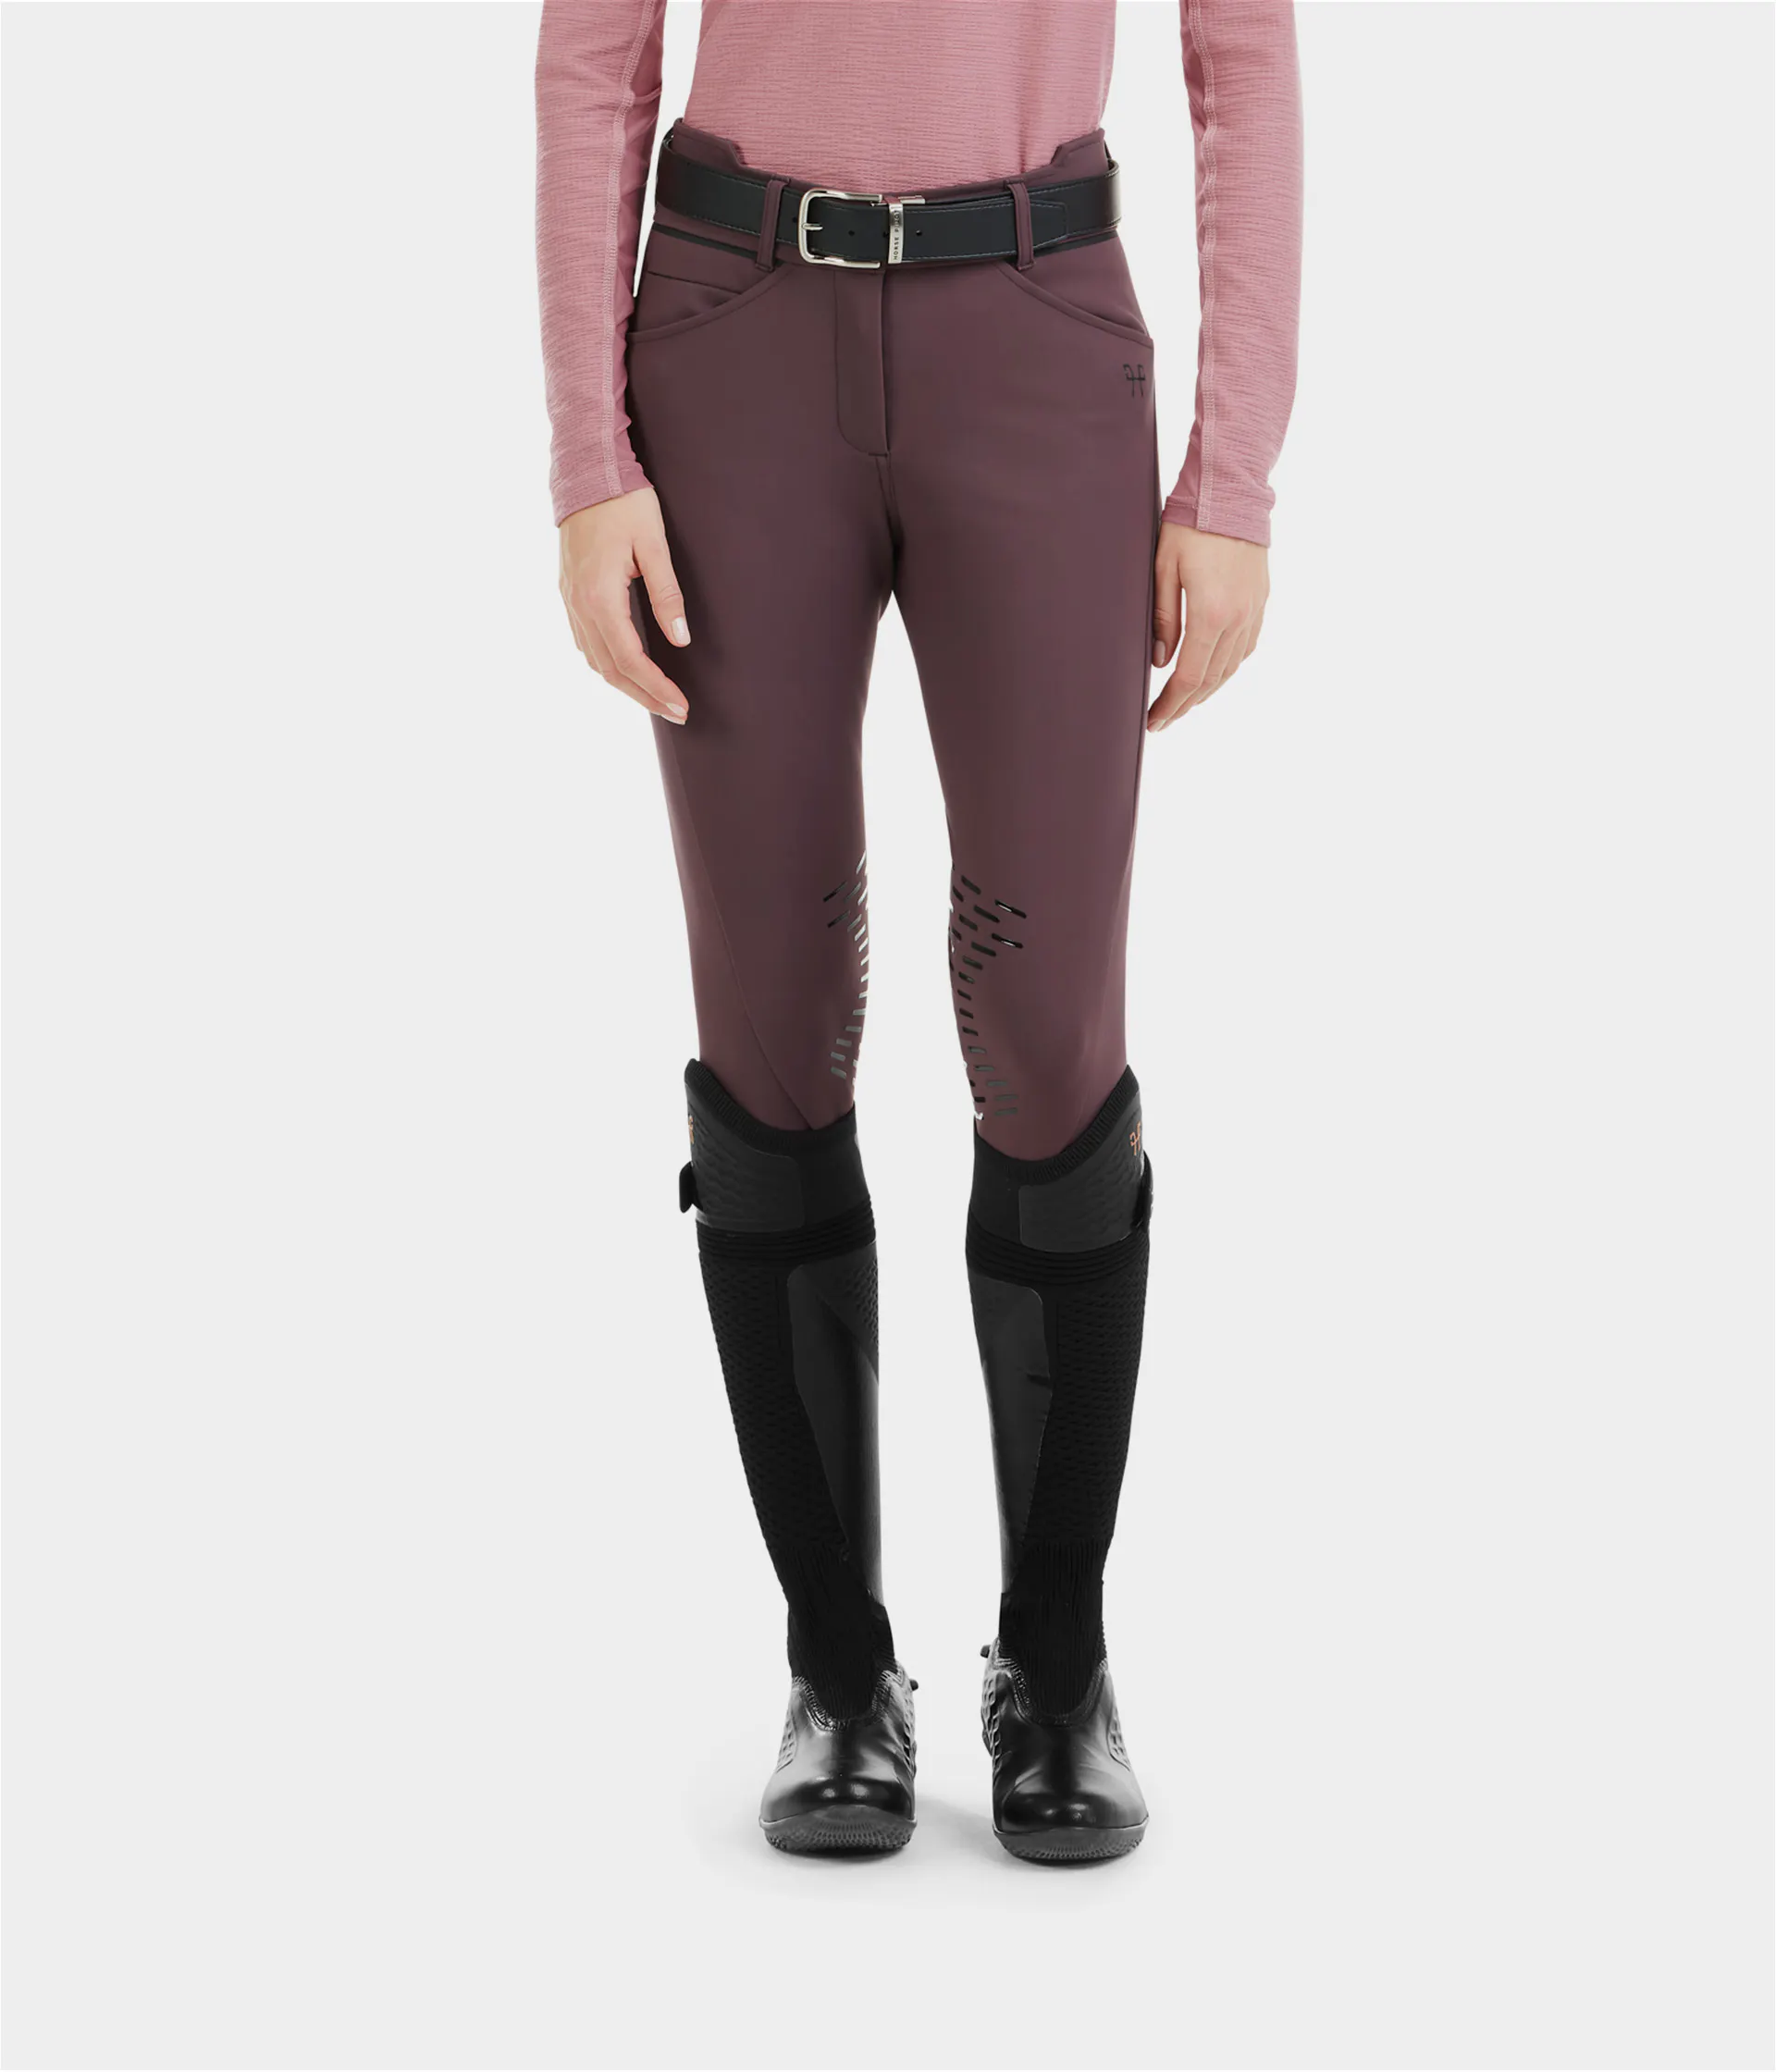 pantalon équitation femme horse pilot x-design couleur winetasting